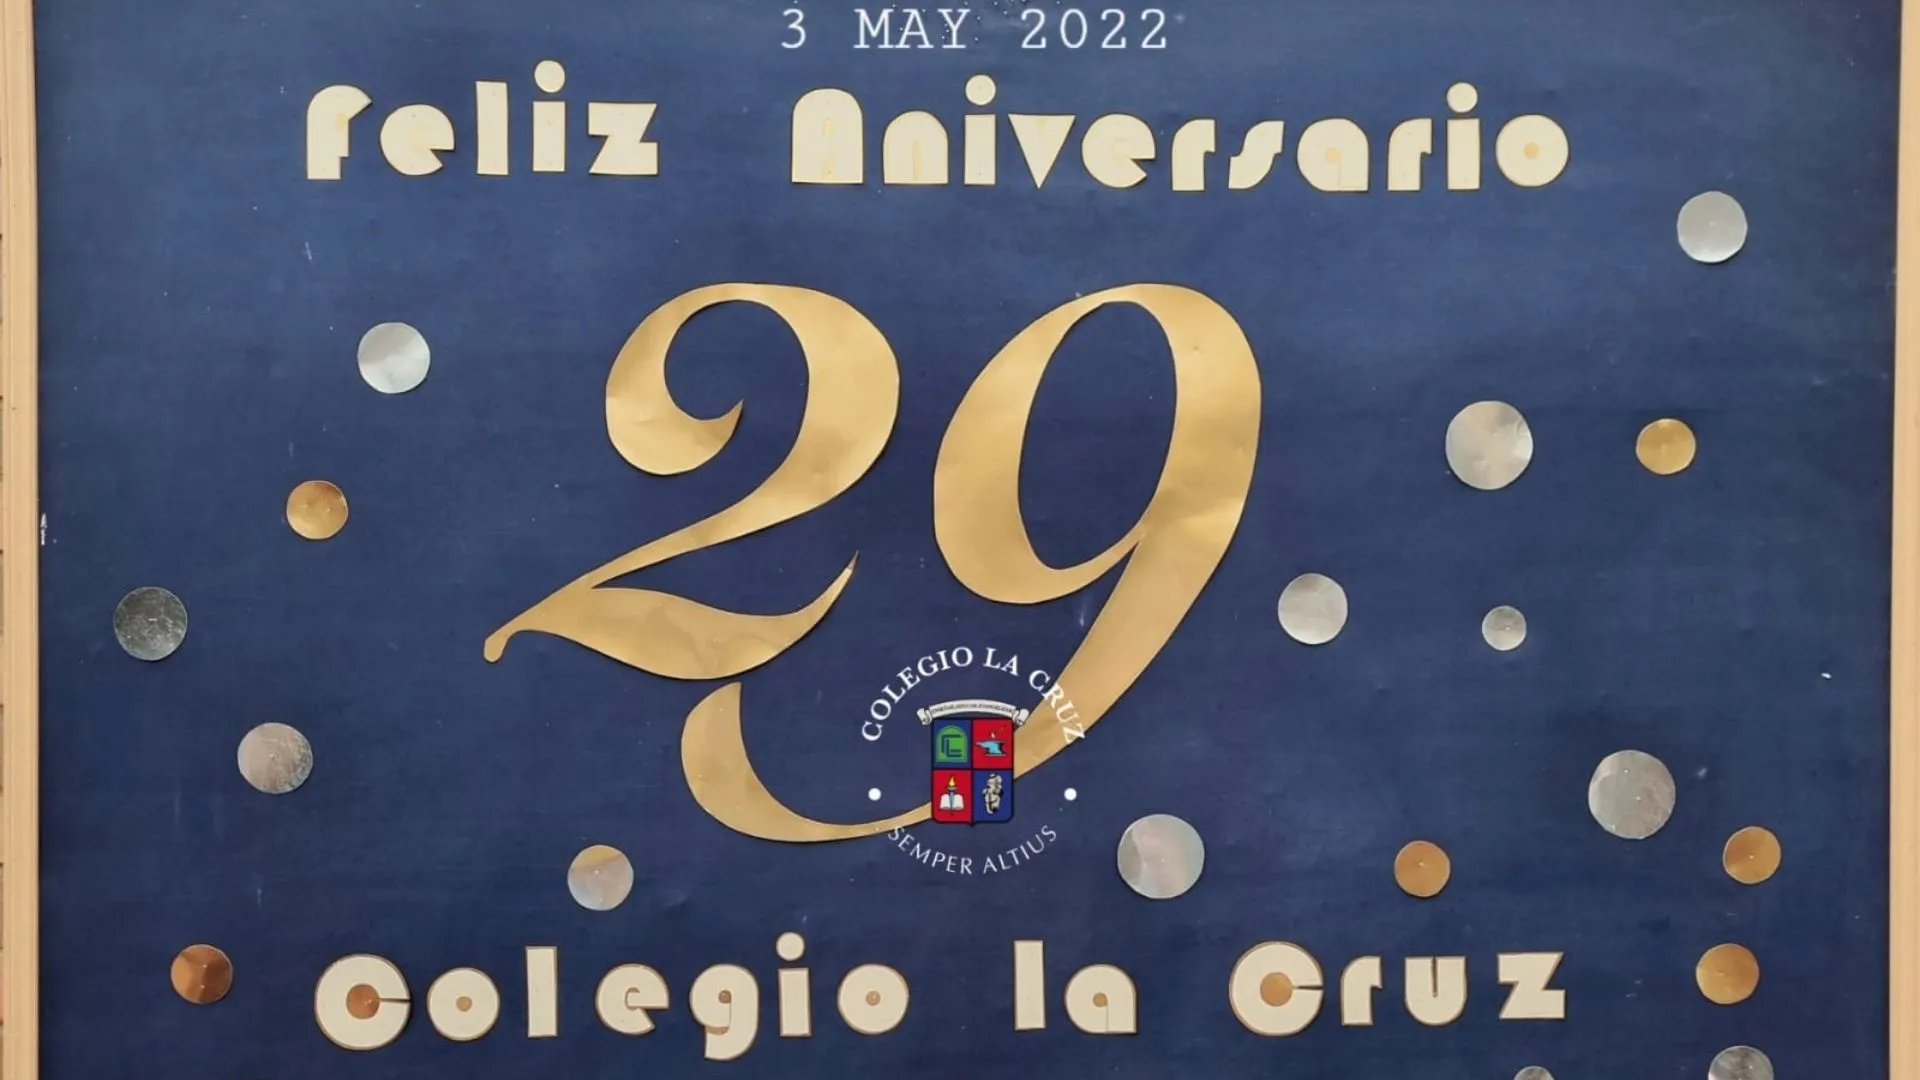 Celebrando nuestros 29 años - Colegio La Cruz - Chile